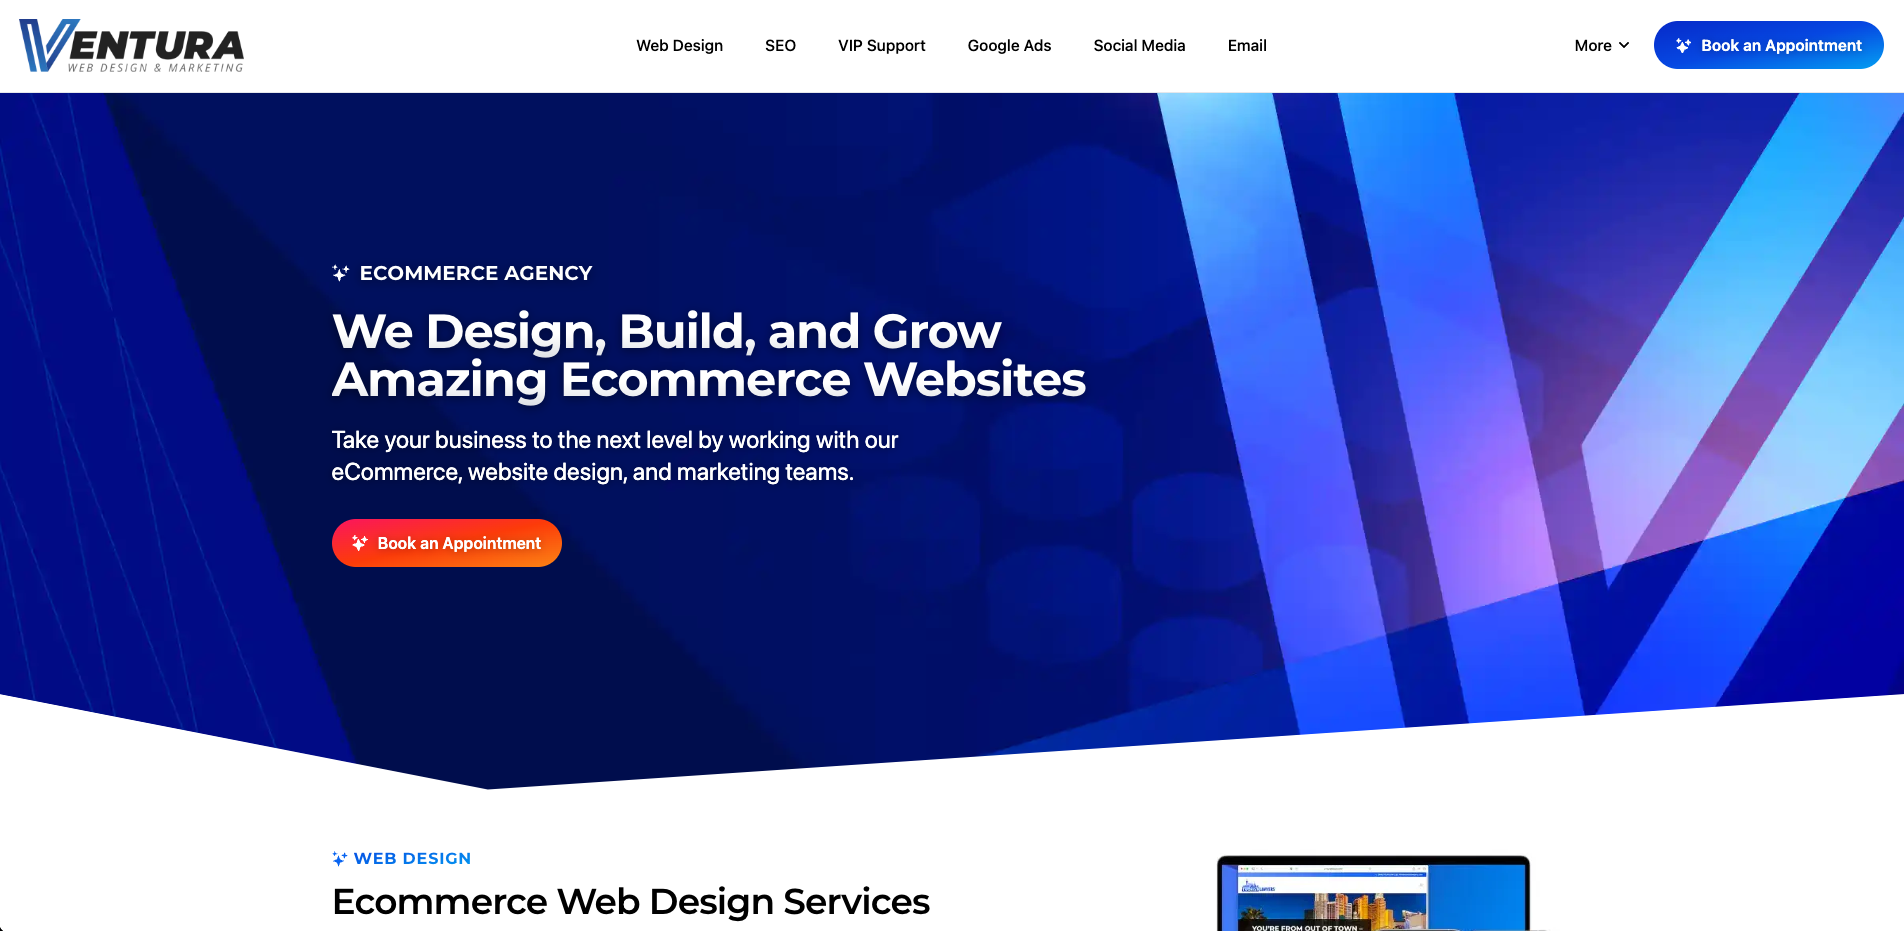 Ventura Web Design